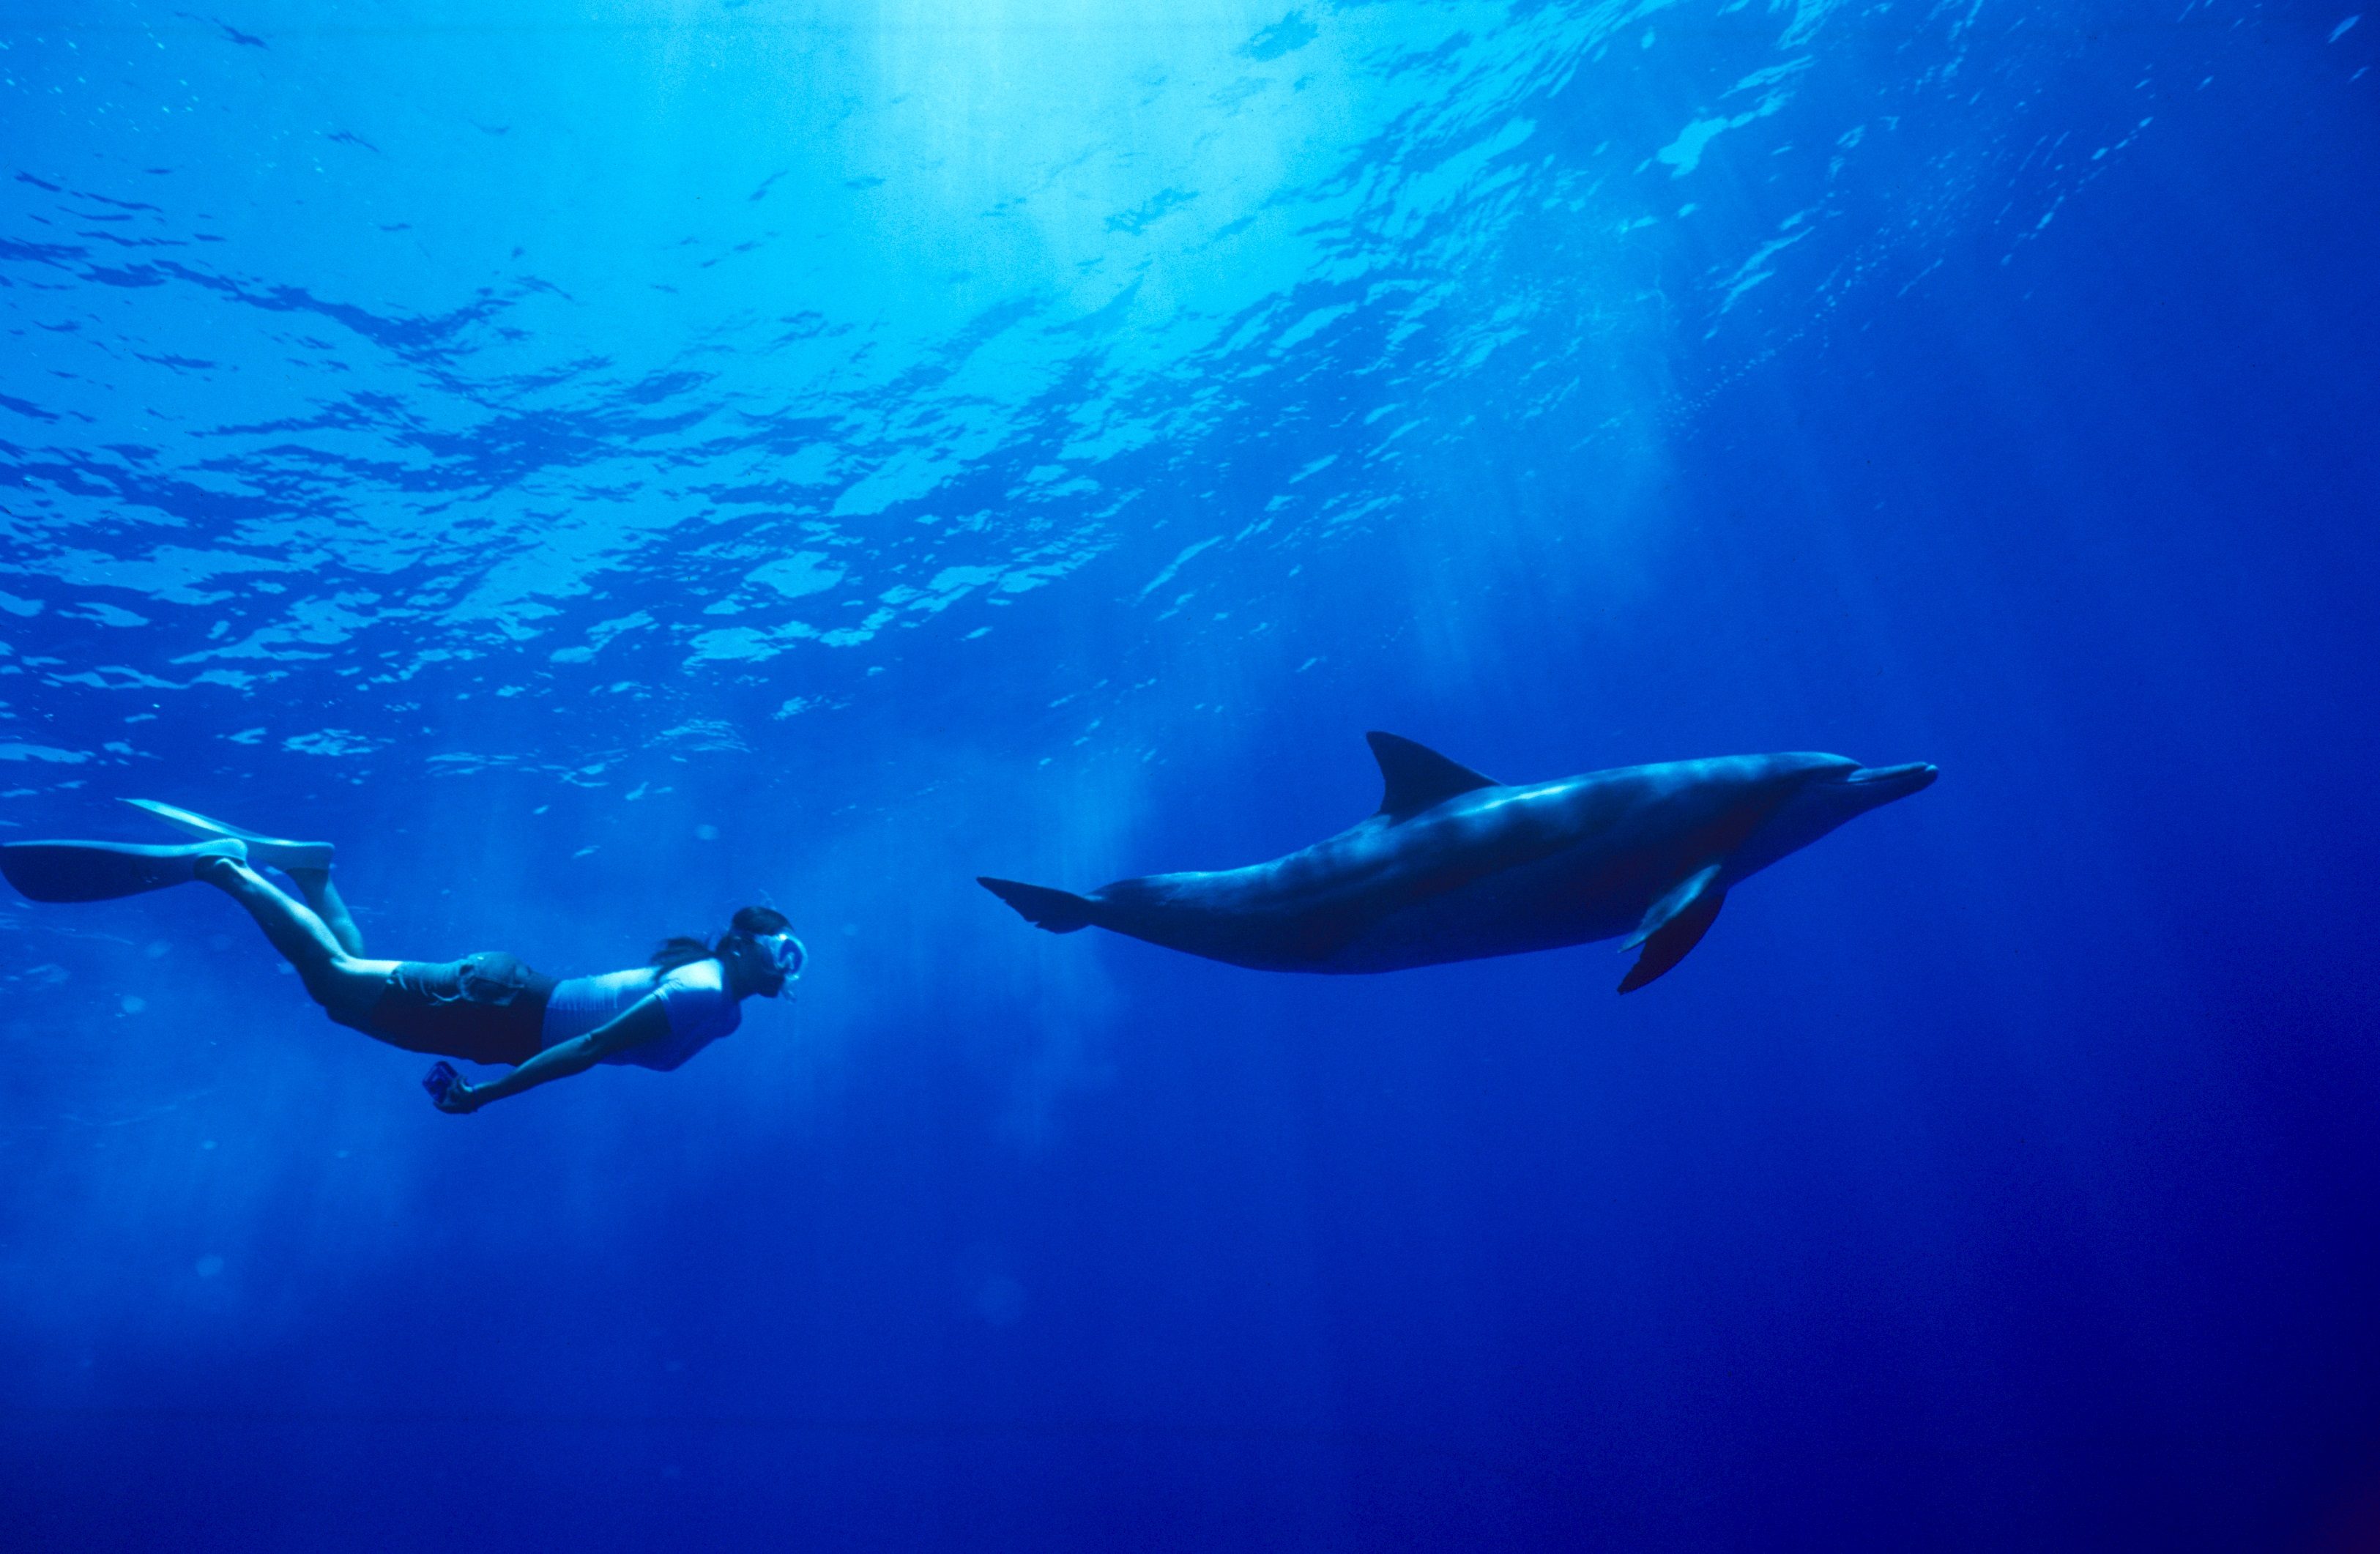 信じられますか 小笠原では野生のイルカと泳ぐドルフィンスイムができるんです 小笠原村観光局